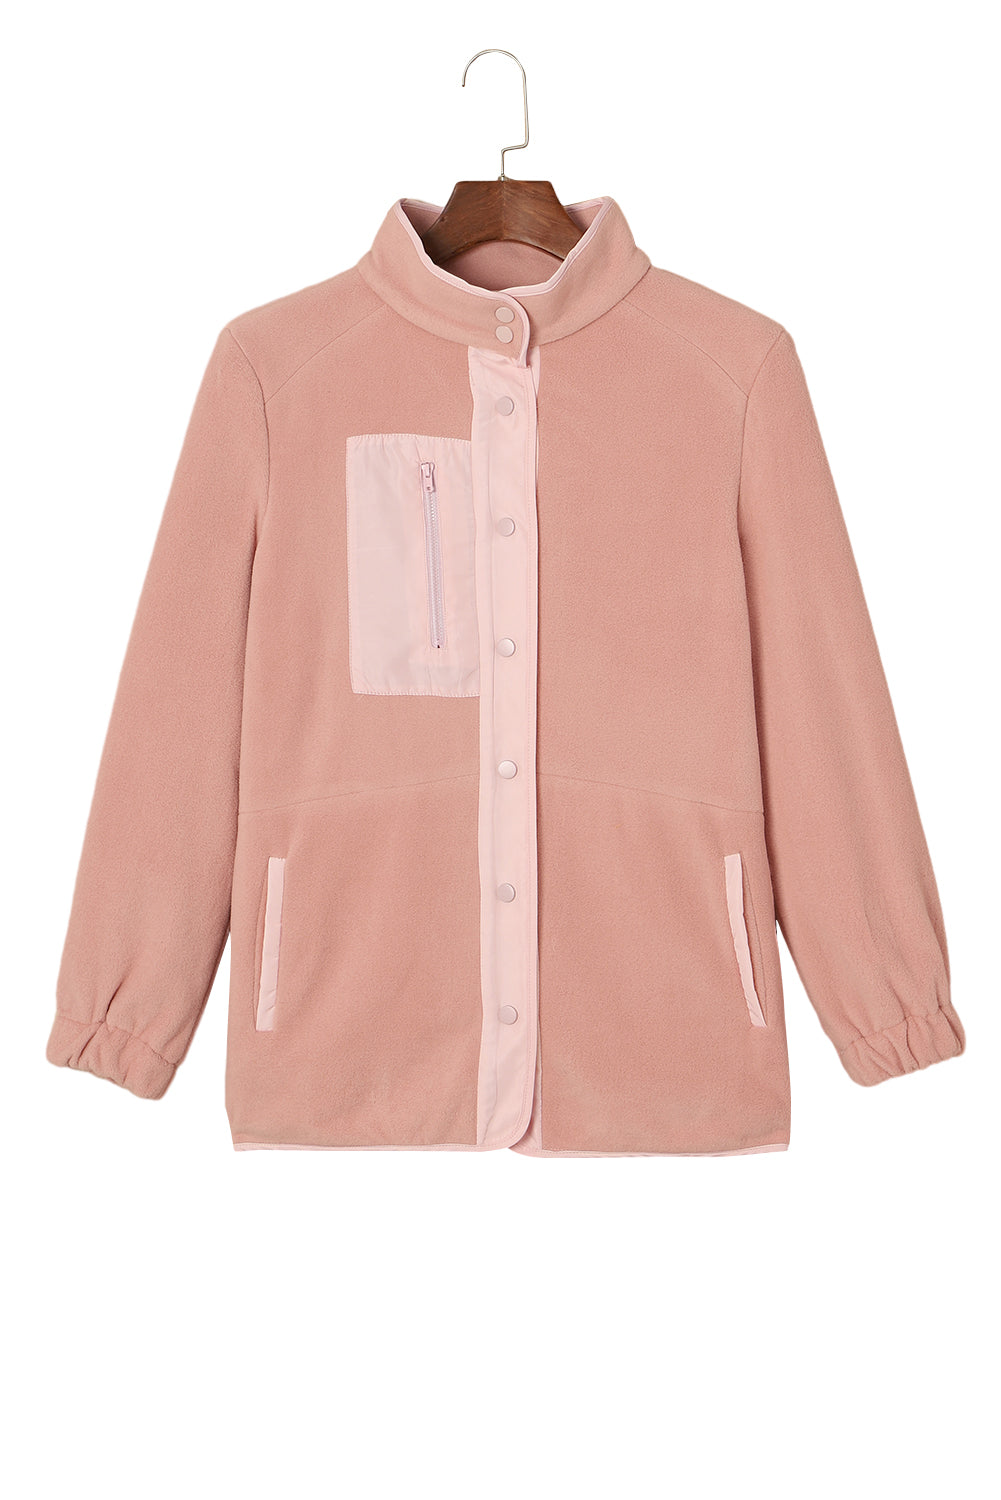 Pink Sherpa jakna s džepovima s kontrastnim obrubom